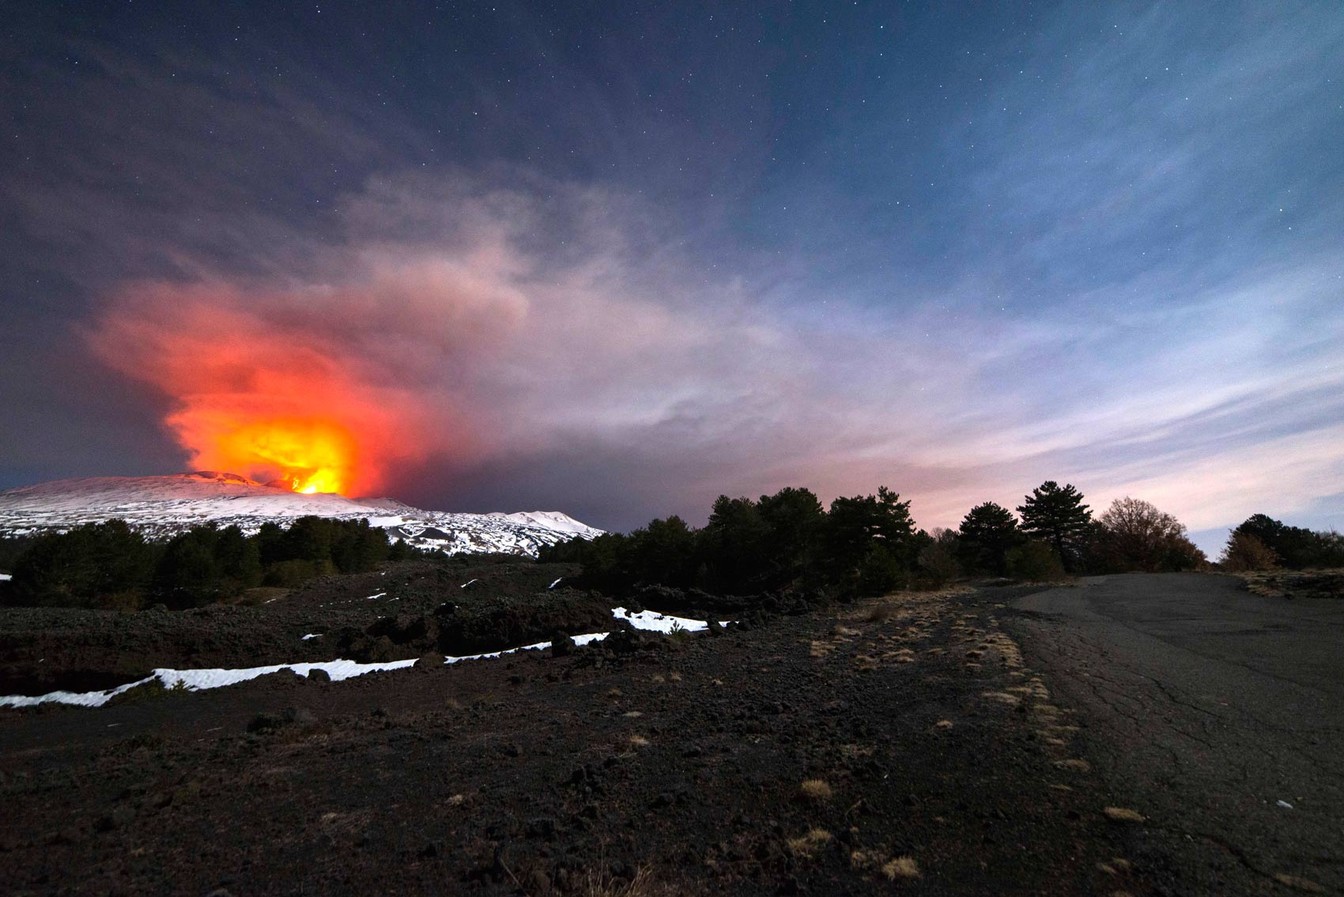 O monte Etna, vulcão mais ativo da Europa, é visto durante erupção no início desta quinta (16) (Foto: Salvatore Allegra/AP)